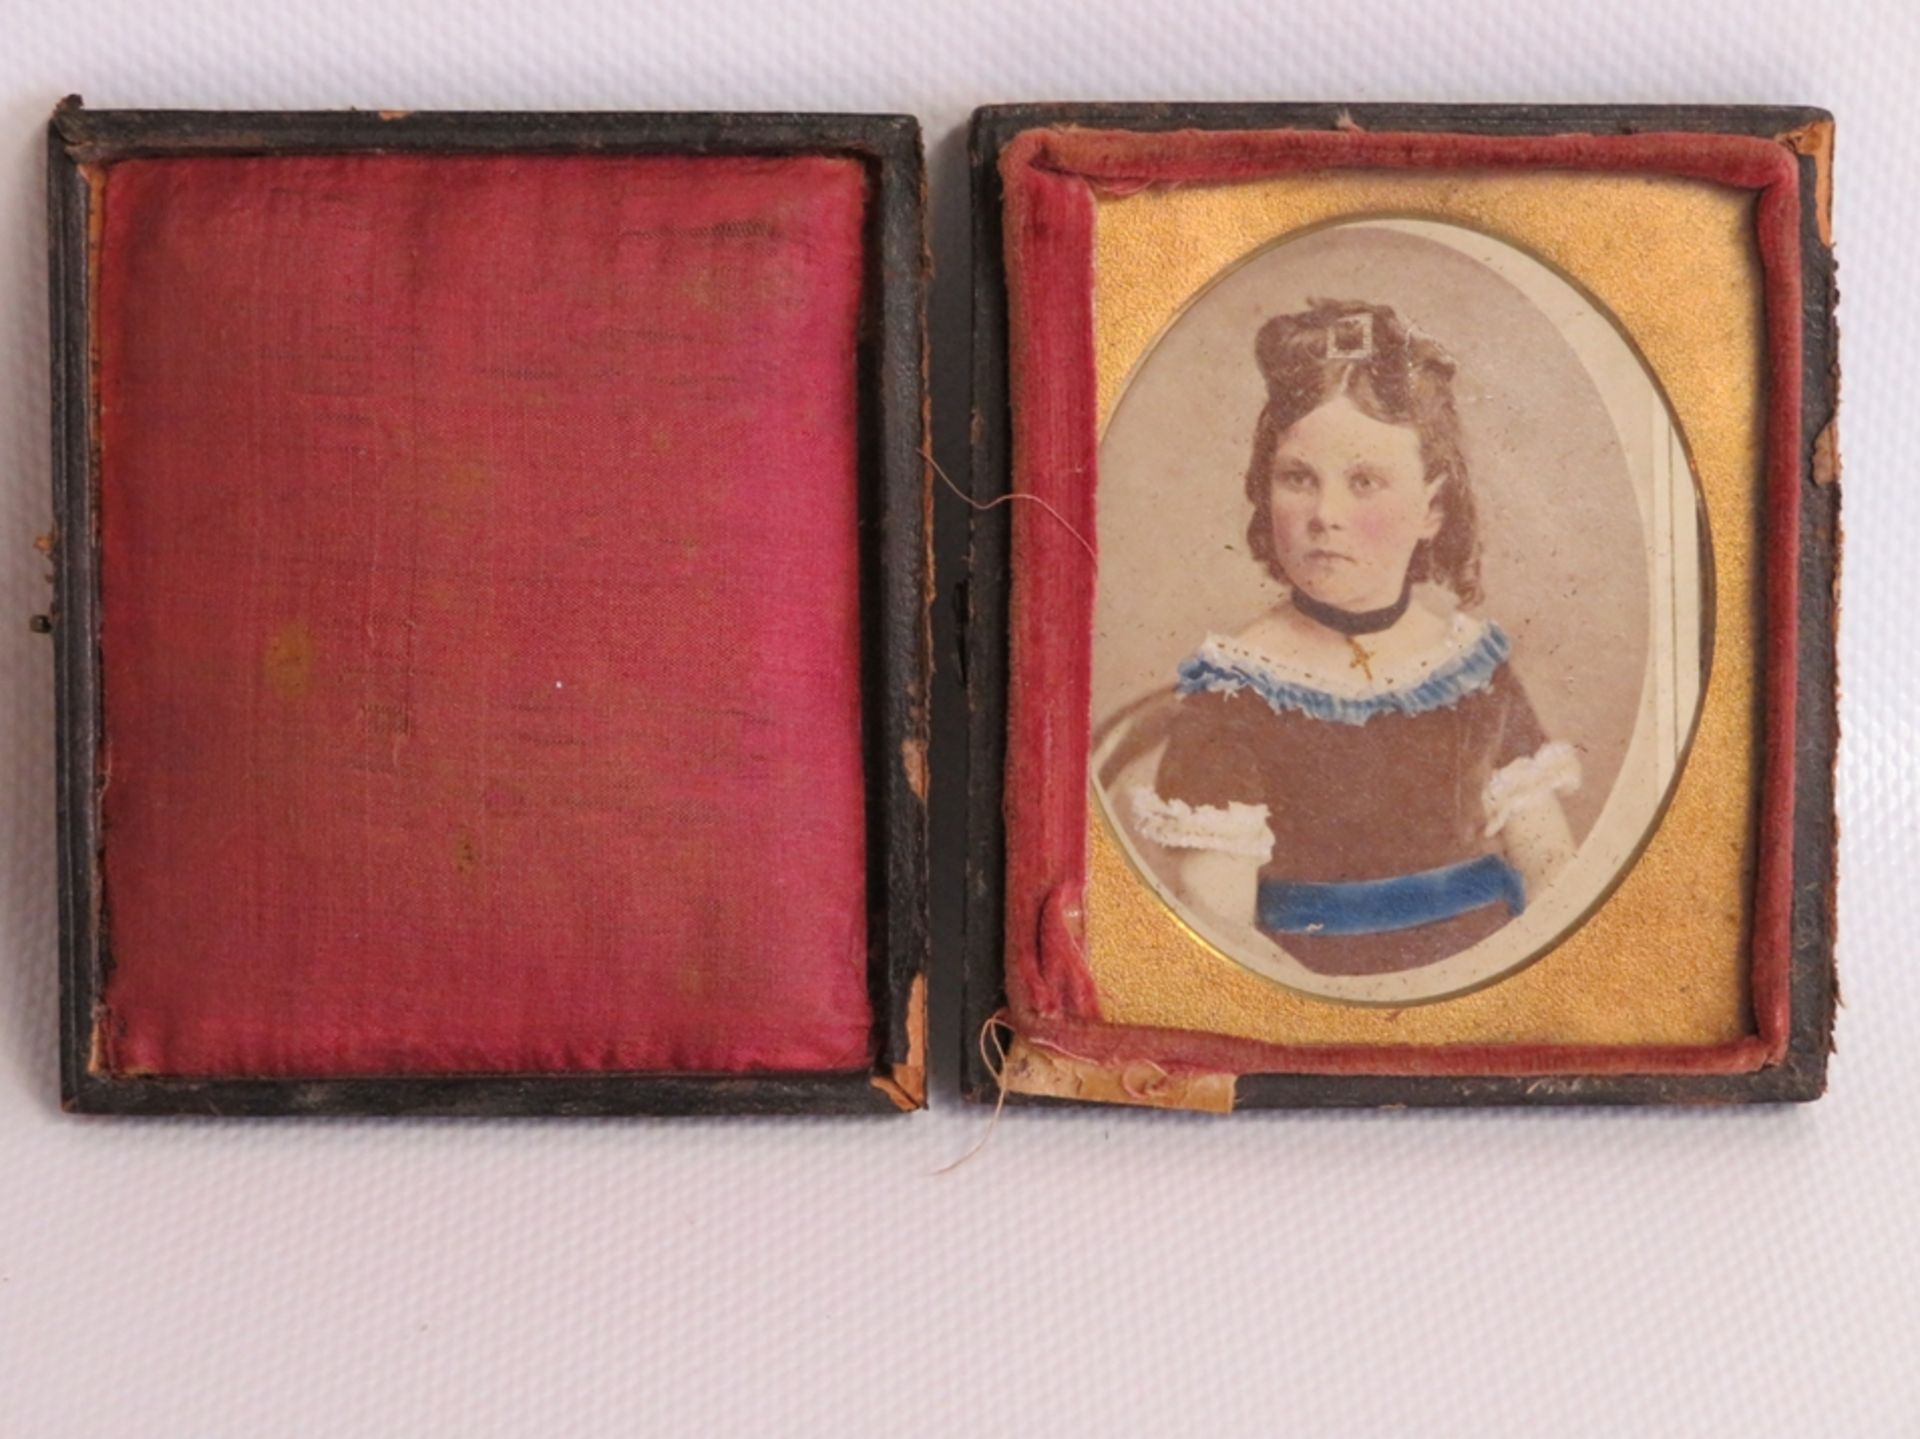 Daguerreotypie, 19. Jahrhundert, "Porträt eines Mädchens", geprägter Einband, besch., 9,5 x 8 cm.